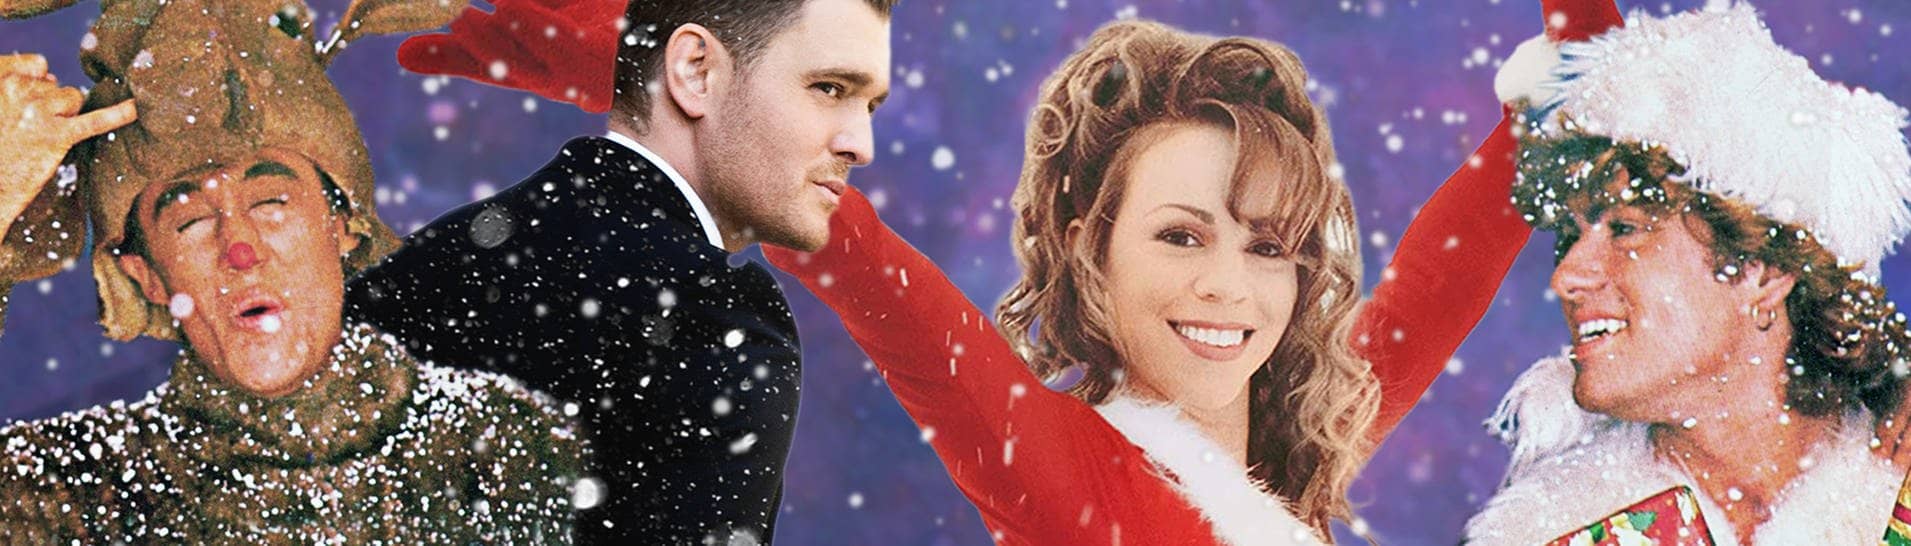 Christmas-Hits von Wham!, Michael Bublè und Mariah Carey